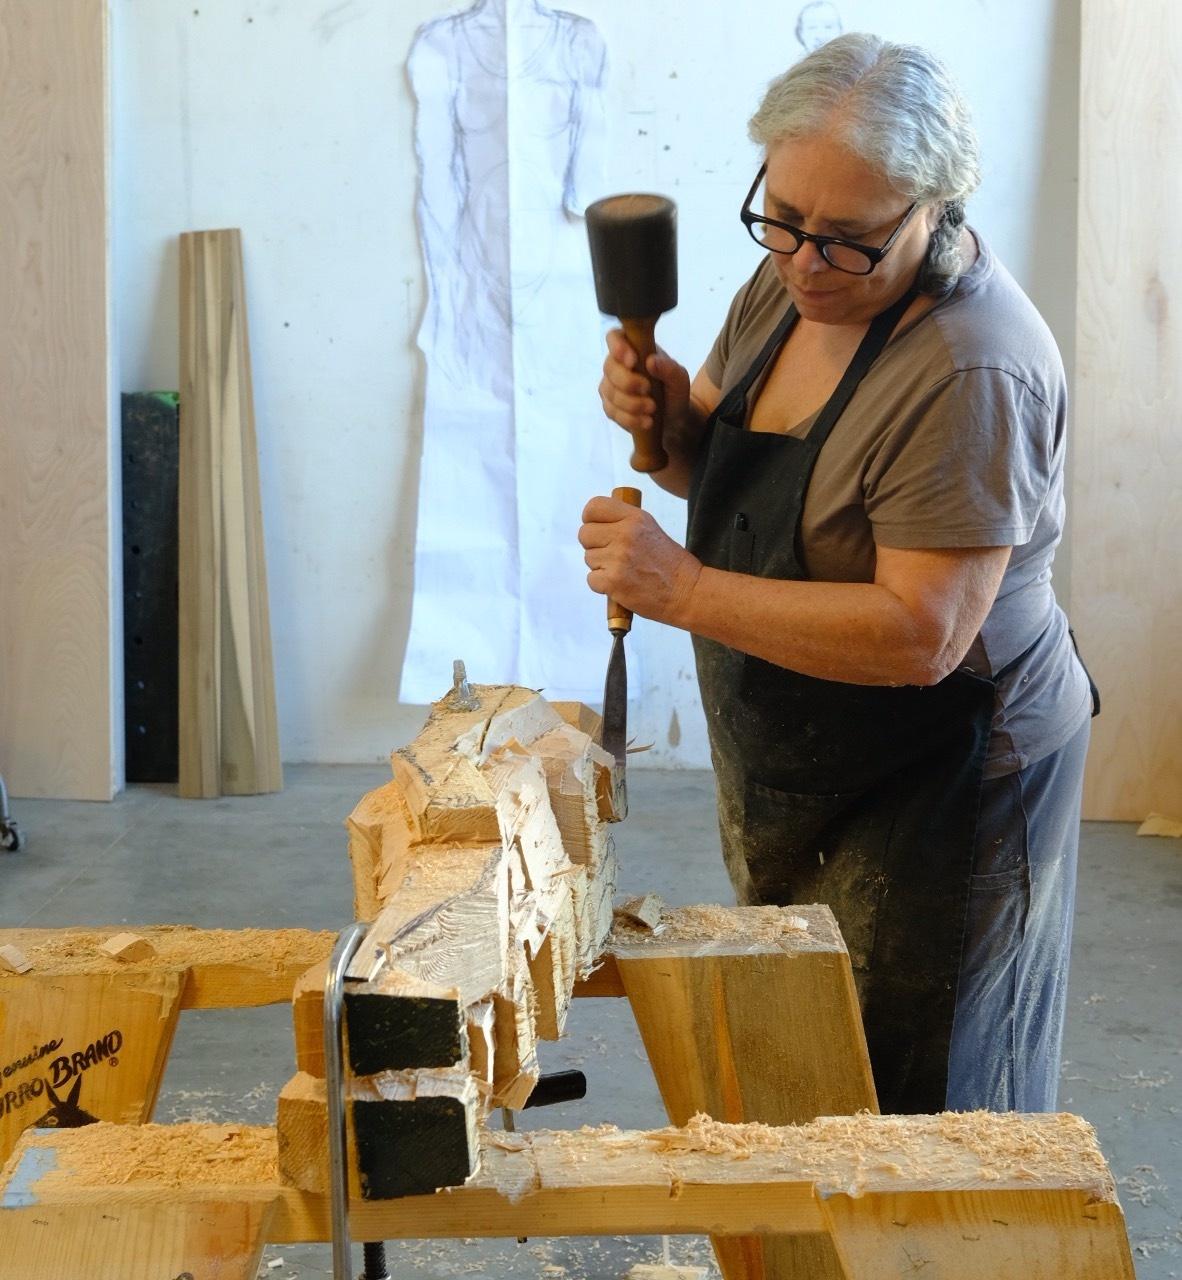 Alison Saar chisels a block of wood